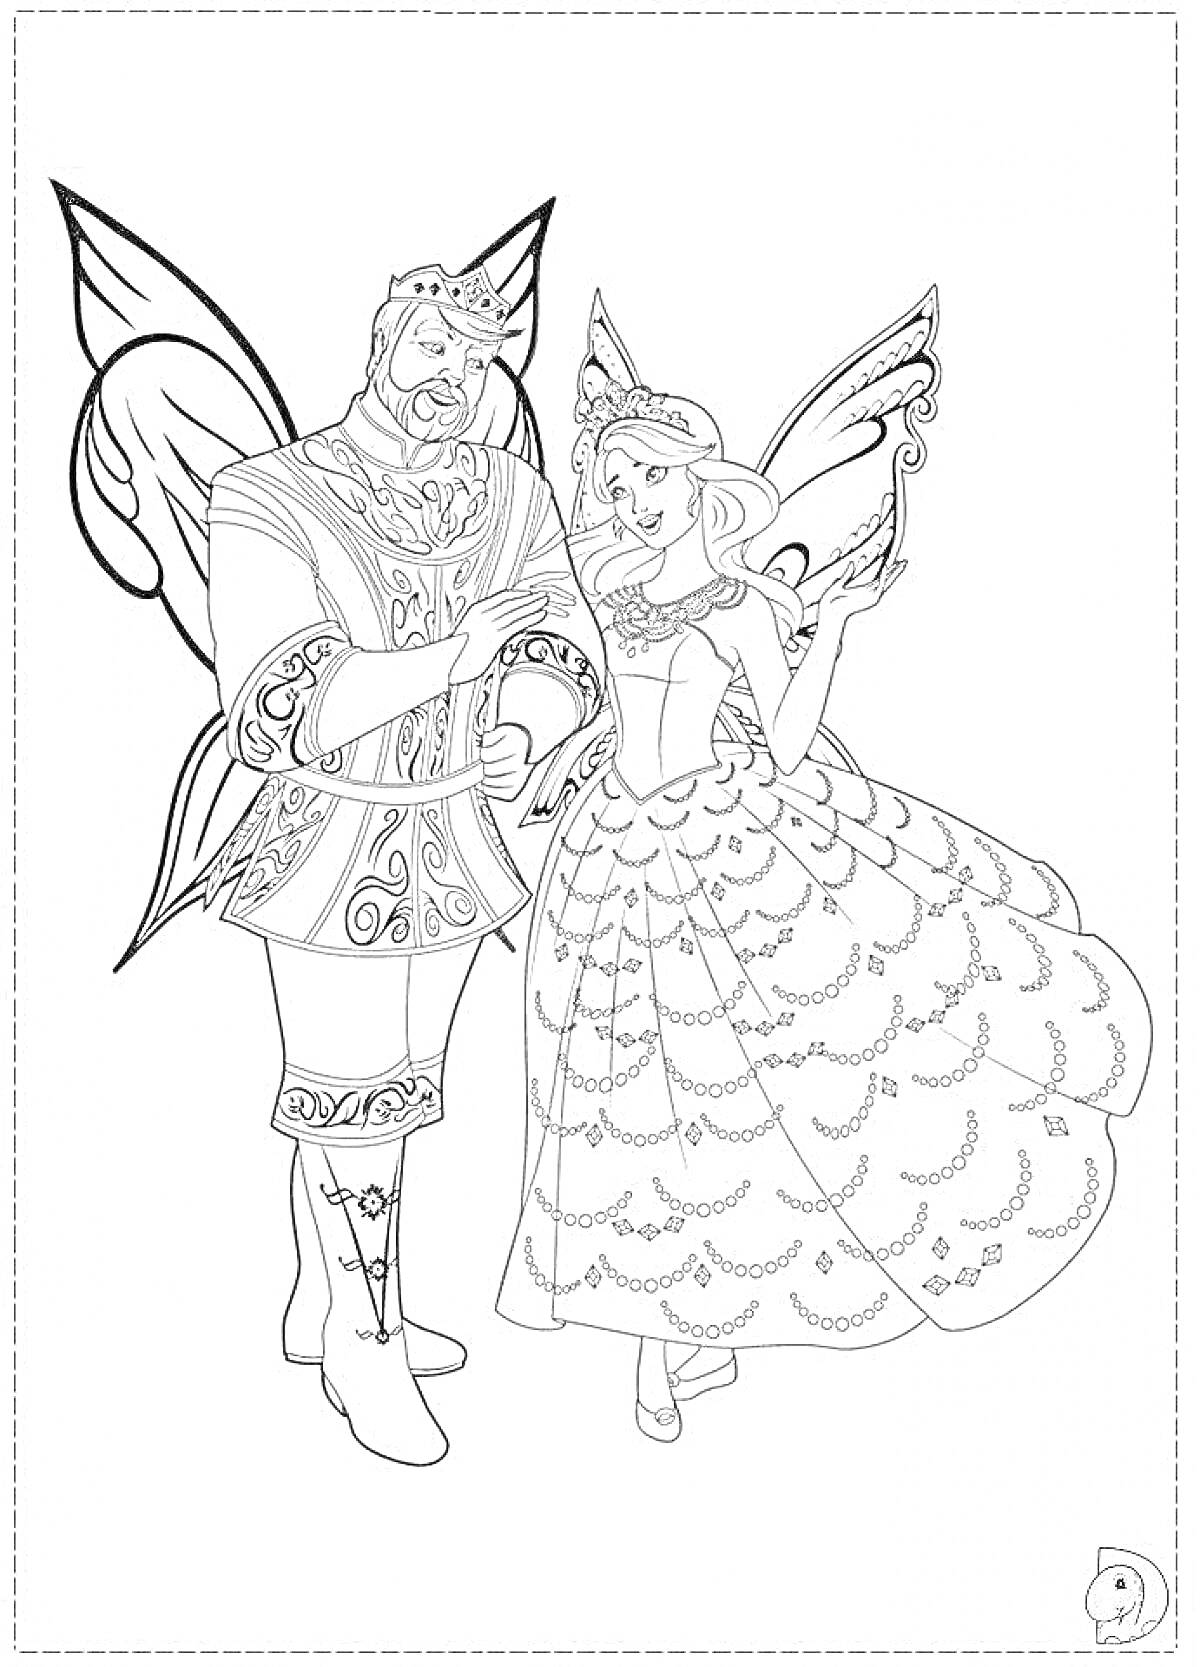 Раскраска Принц и принцесса-феи с крыльями в украшенных одеждах